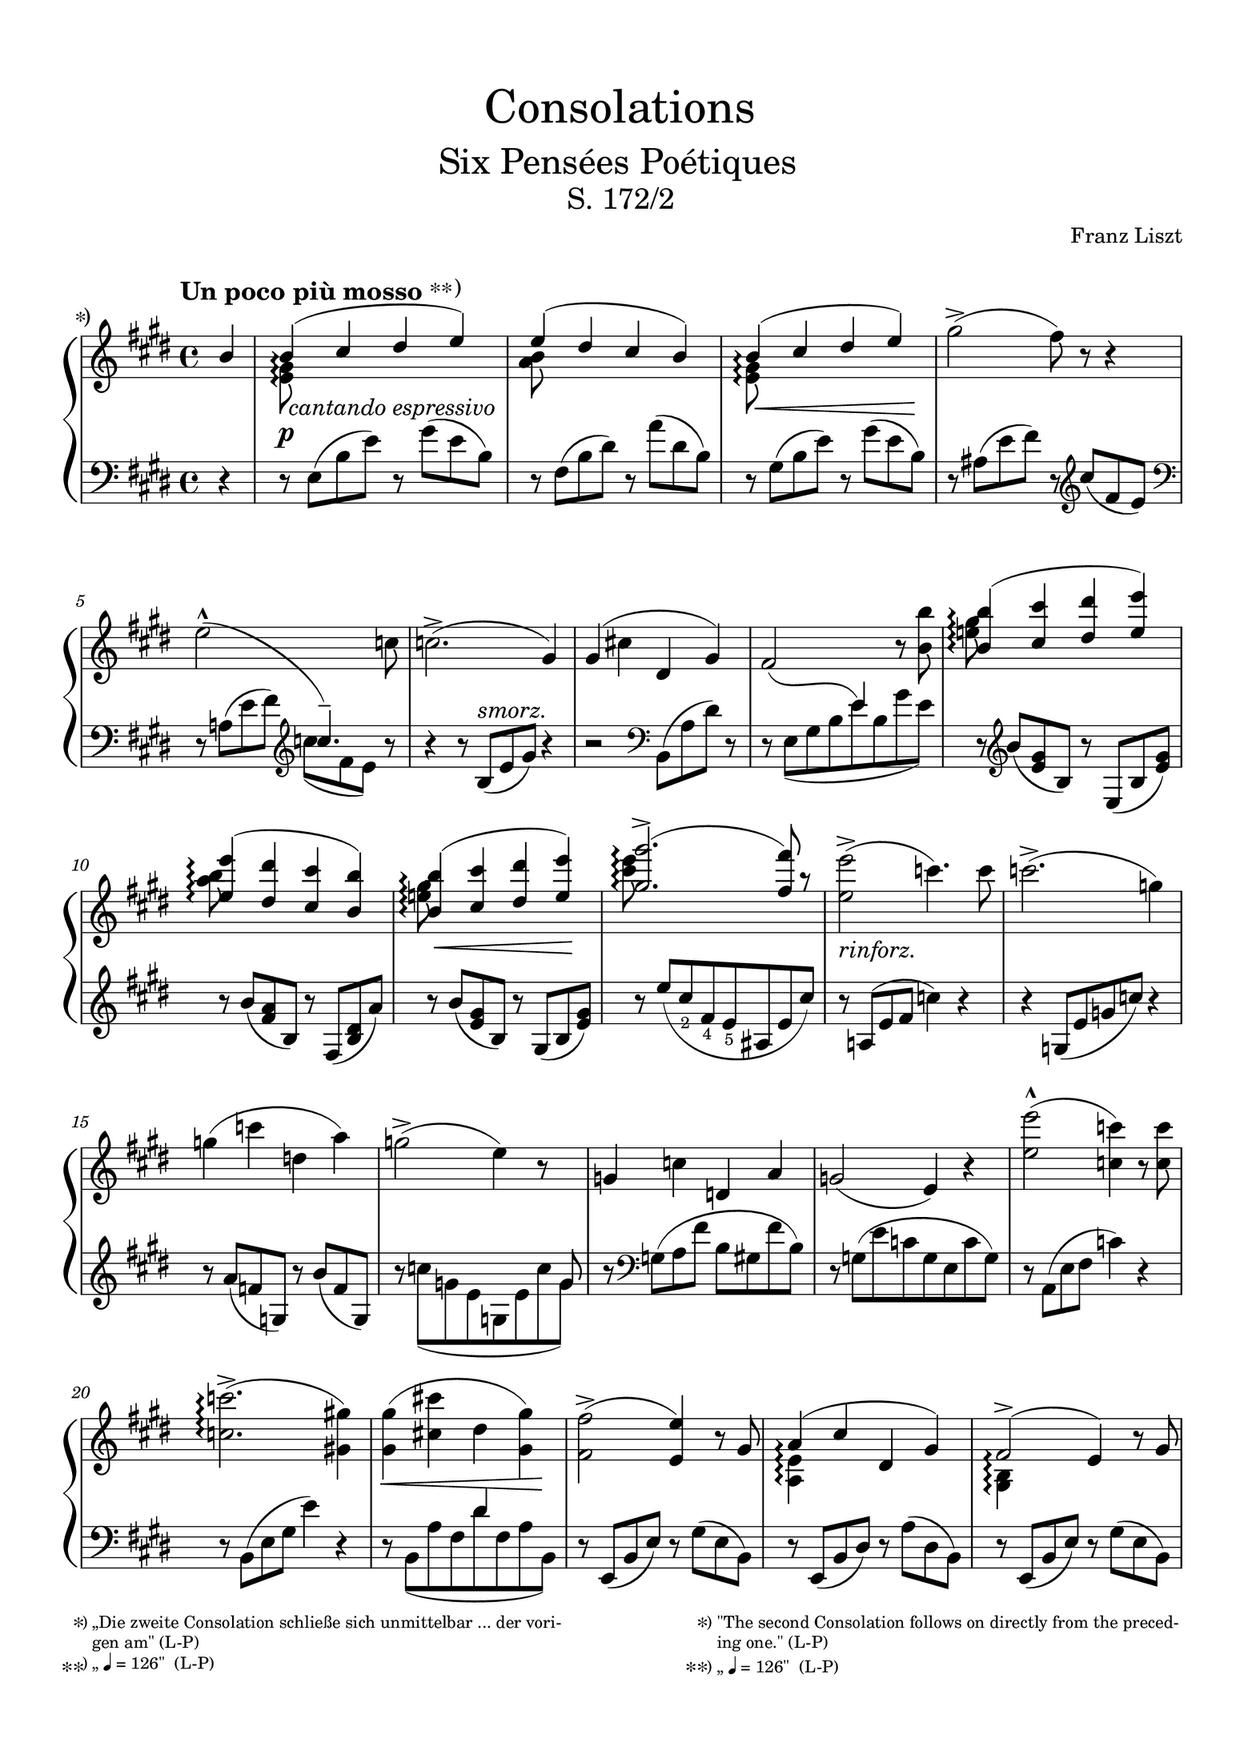 Consolations, S172/R12: No. 2. Un poco piu mossoピアノ譜